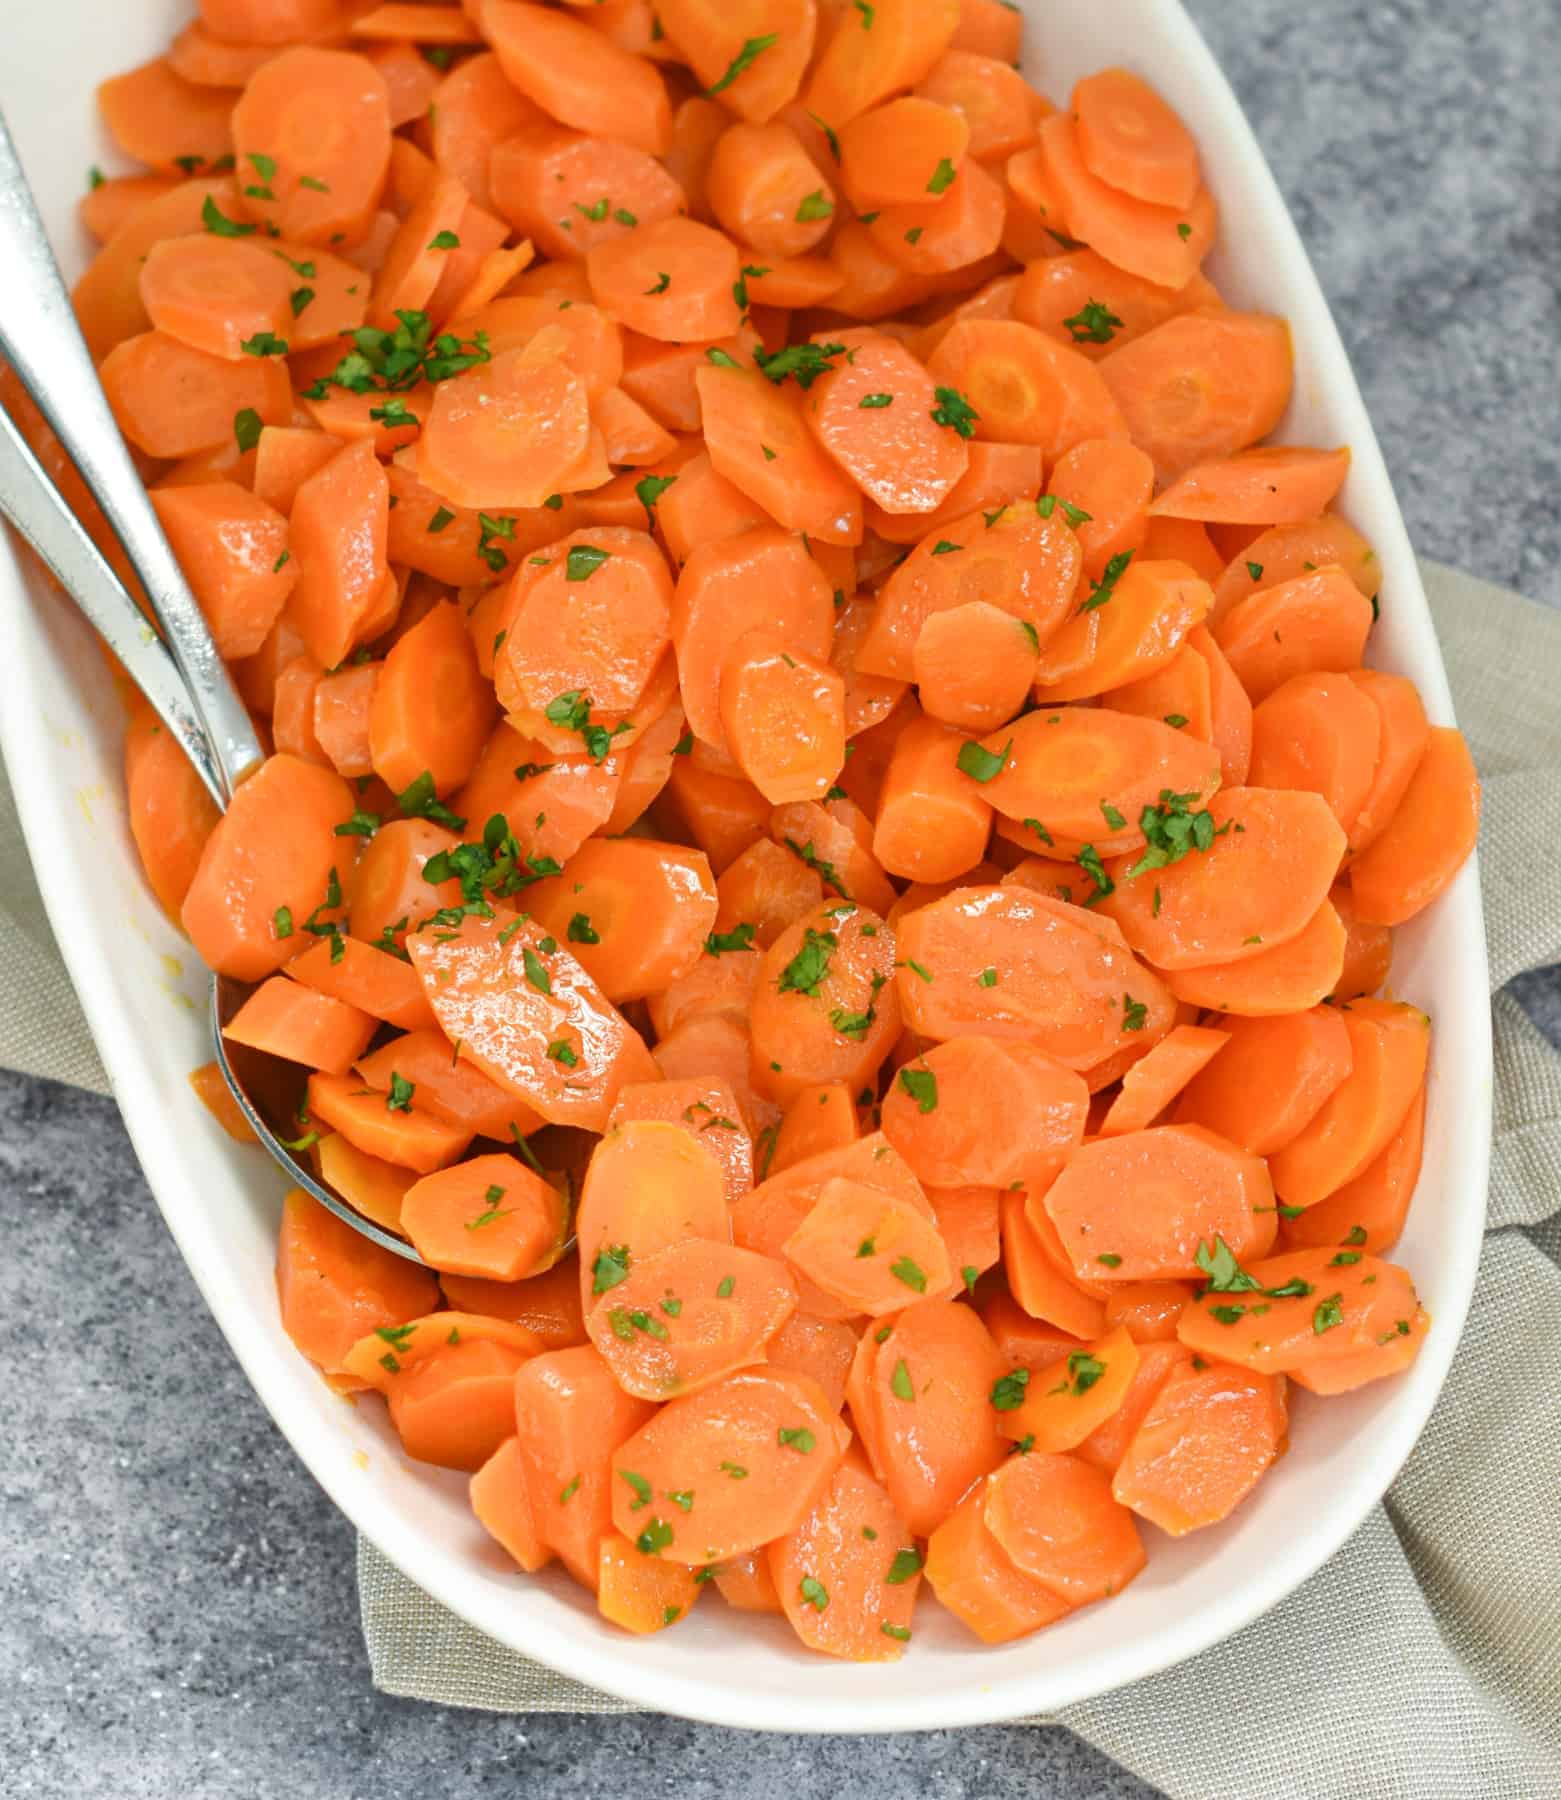 Sautéed Carrots recipe